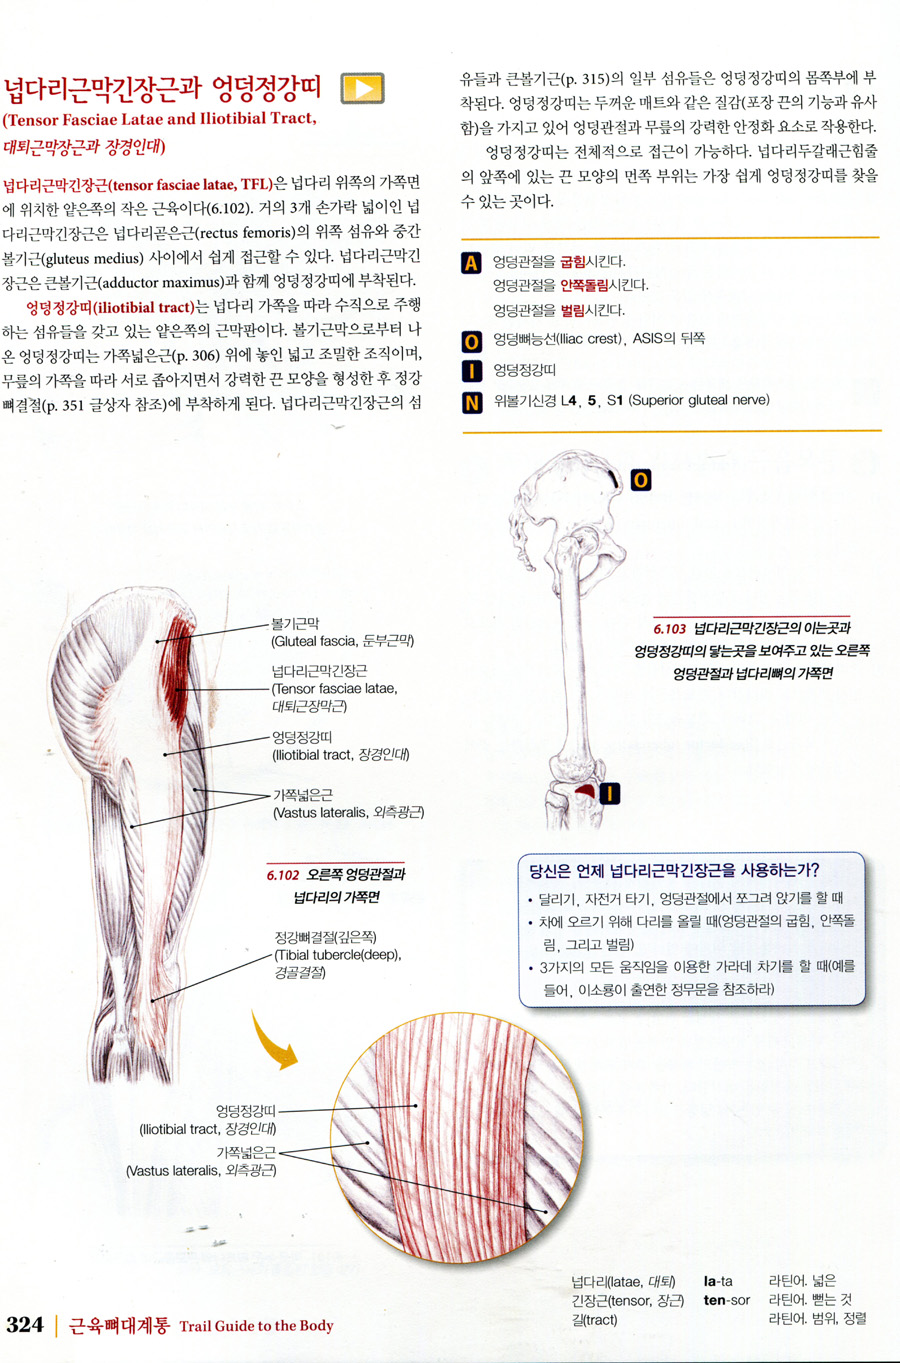 근육뼈대계통 Palpation Road Map (5판 )-손으로 근육, 뼈, 기타 조직의 위치를 찾기 위한 안내서